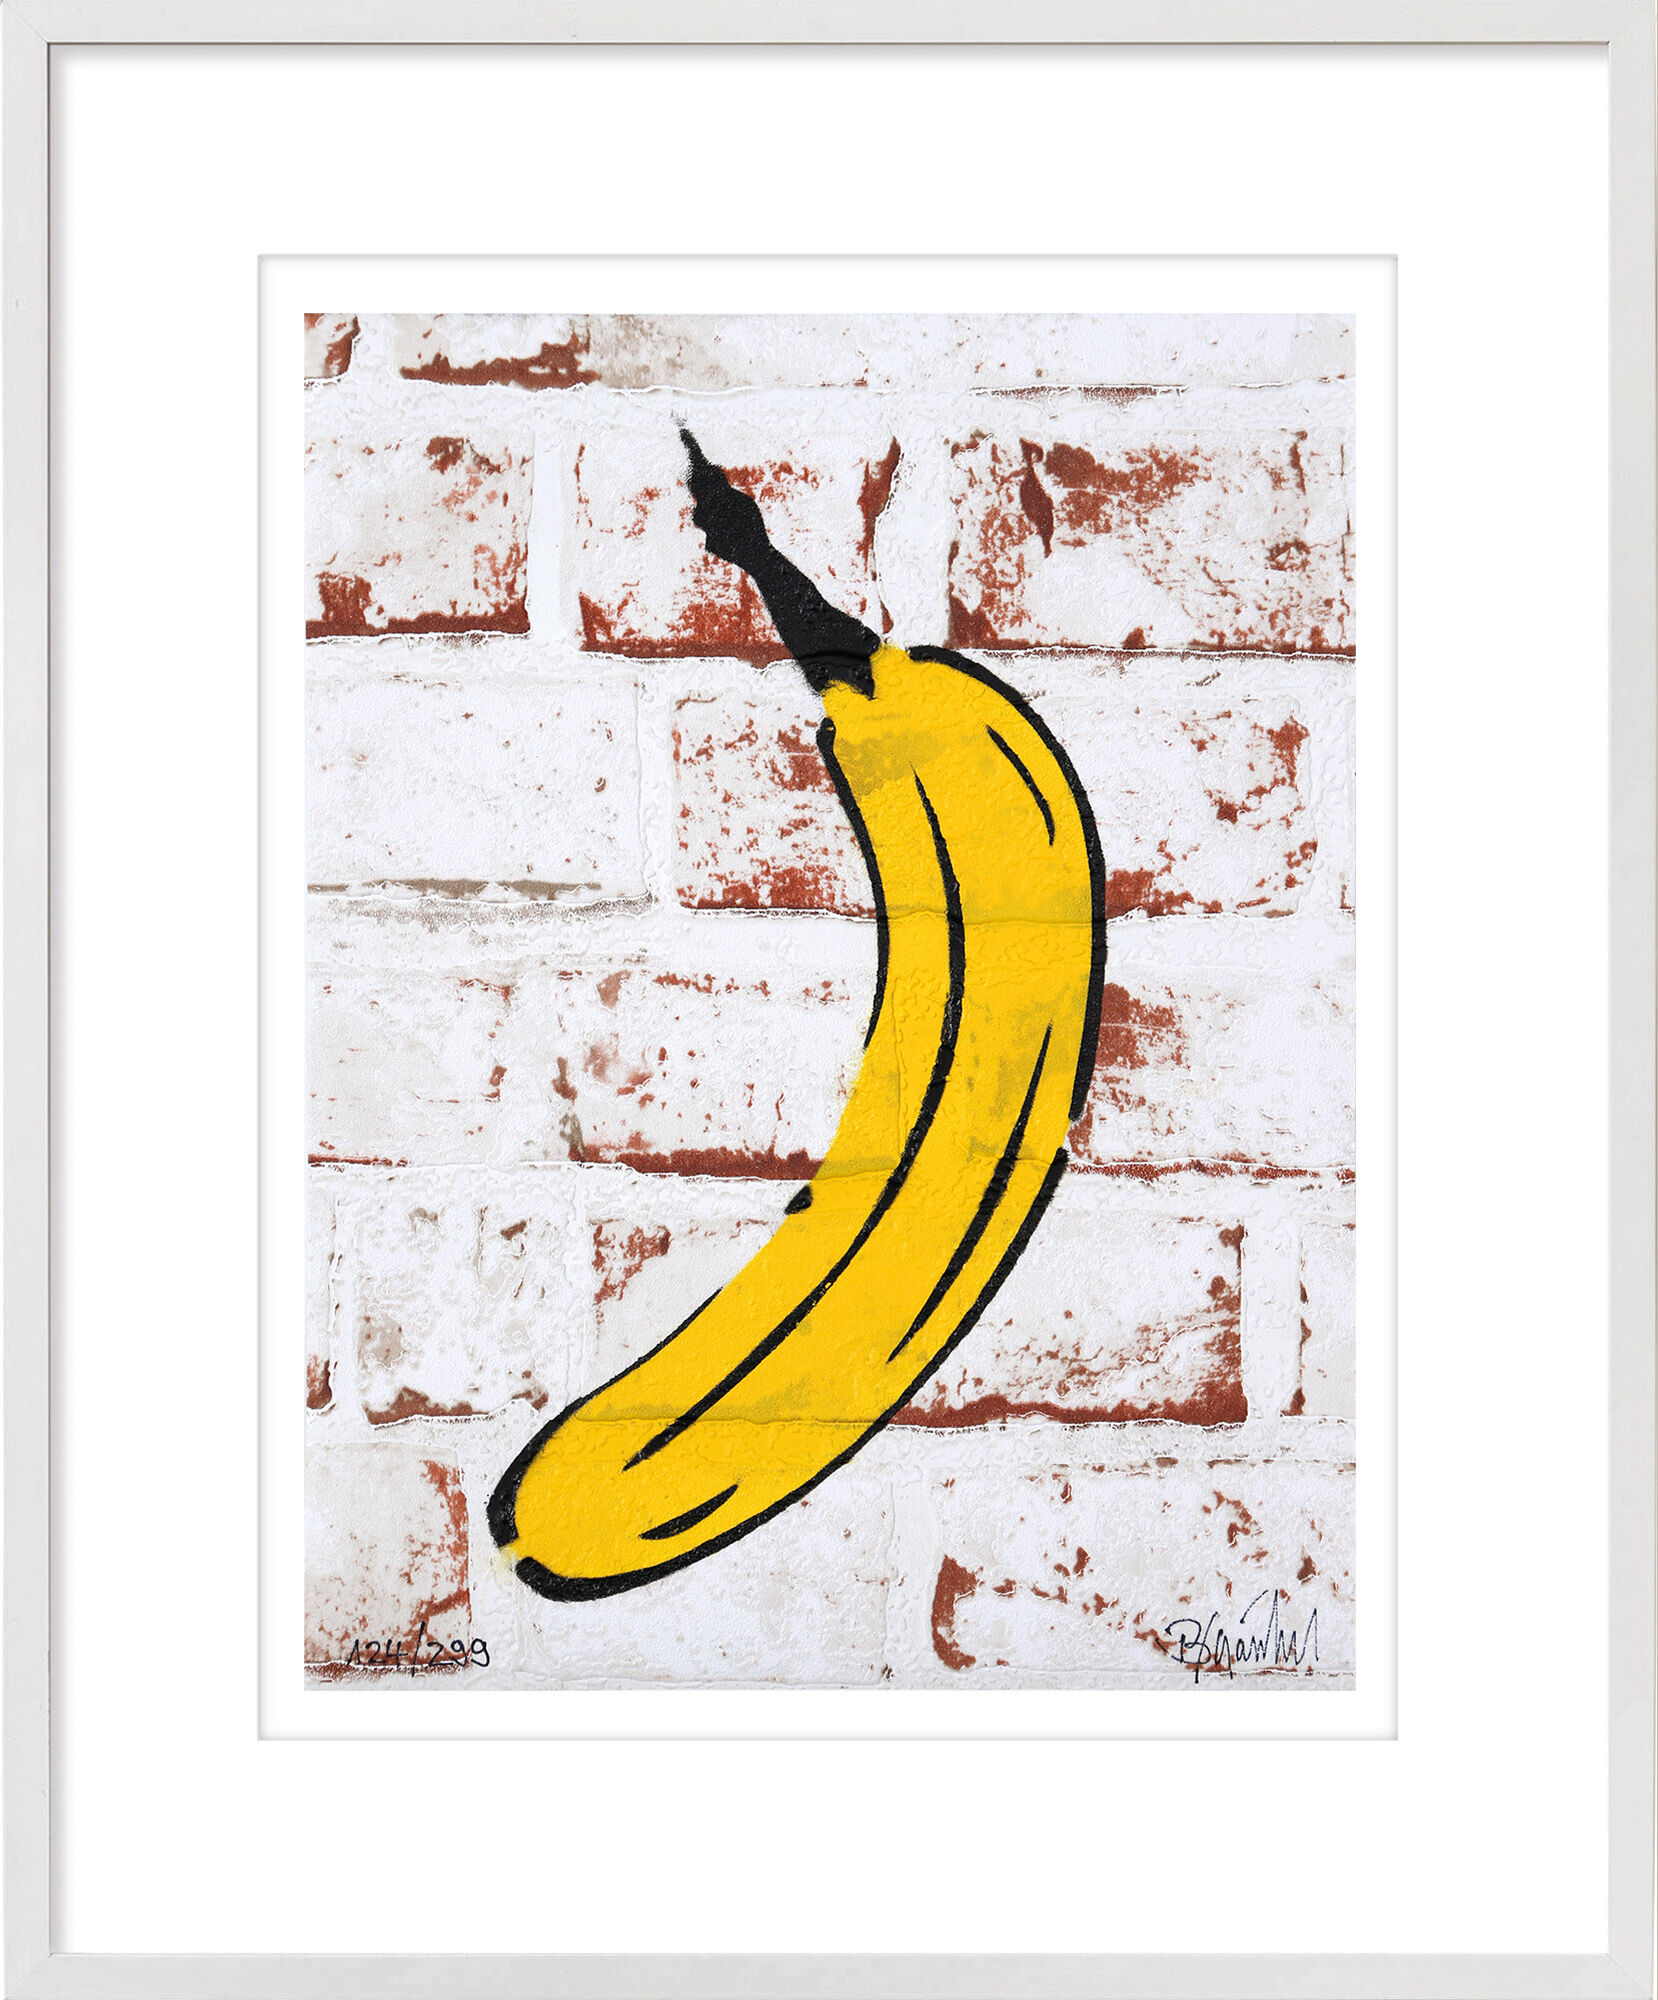 Tableau "Banane murale" (2019) von Thomas Baumgärtel